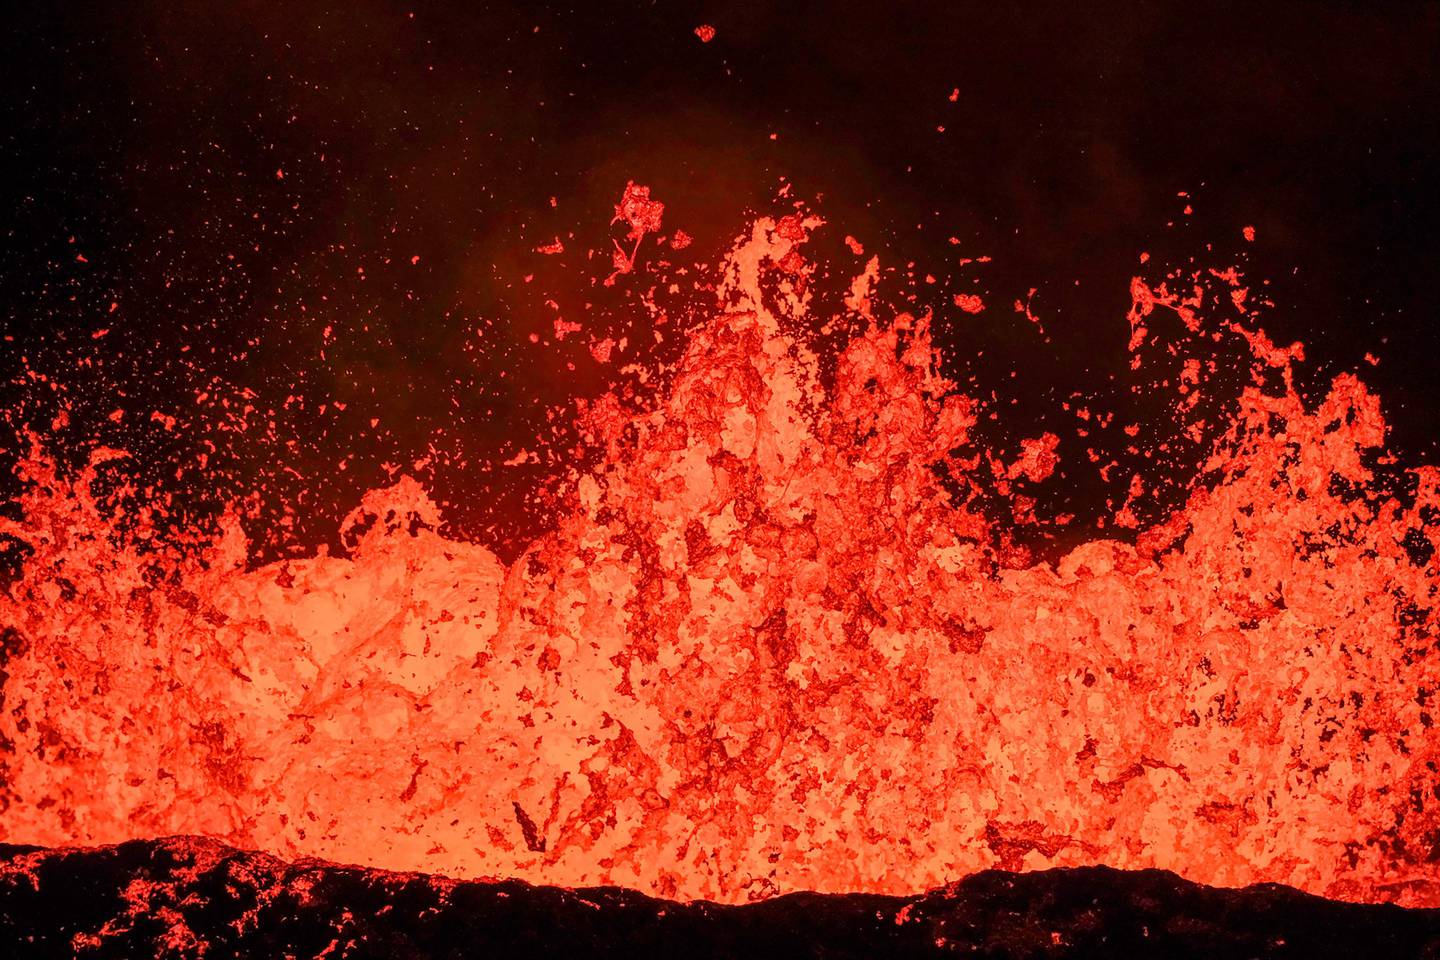 Isalandia es un país altamente sísmico y sus volcanes han presentado erupciones recientes.  Esta es una  erupción la noche del lunes en una zona donde la actividad sísmica era muy intensa desde inicios de noviembre.